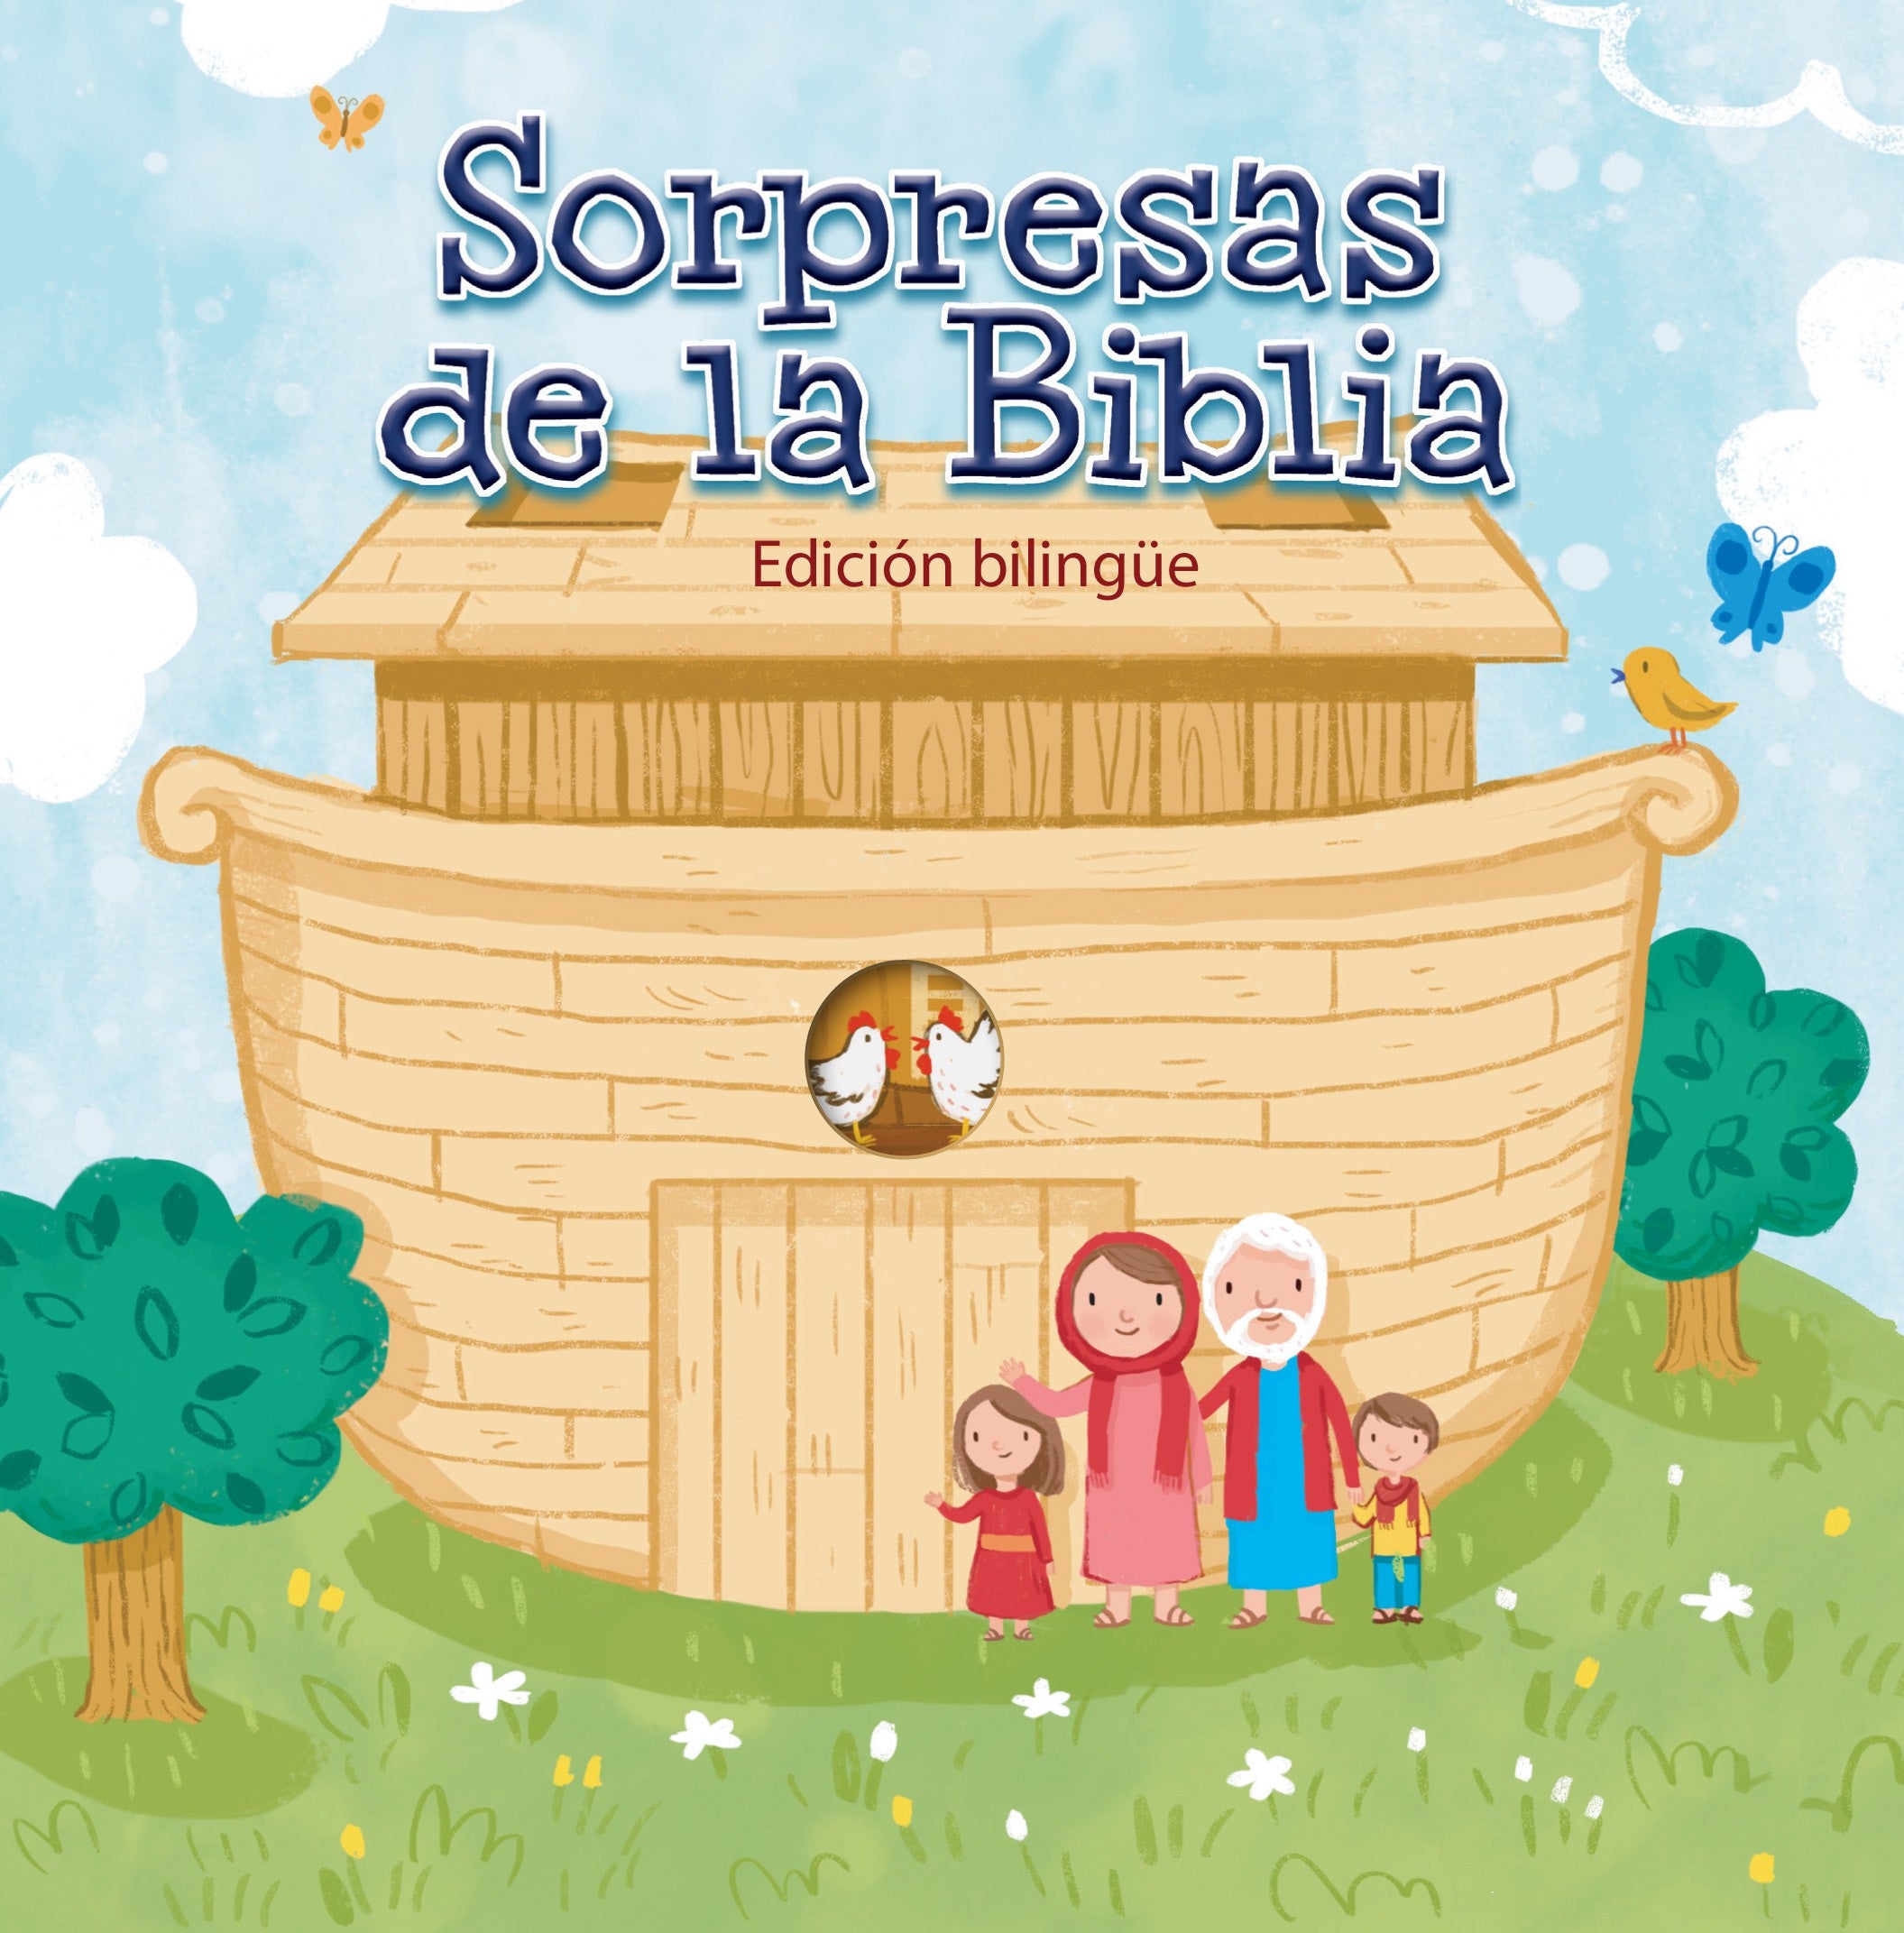 Sorpresas de la biblia edición bilingüe - Librería Libros Cristianos - Libro